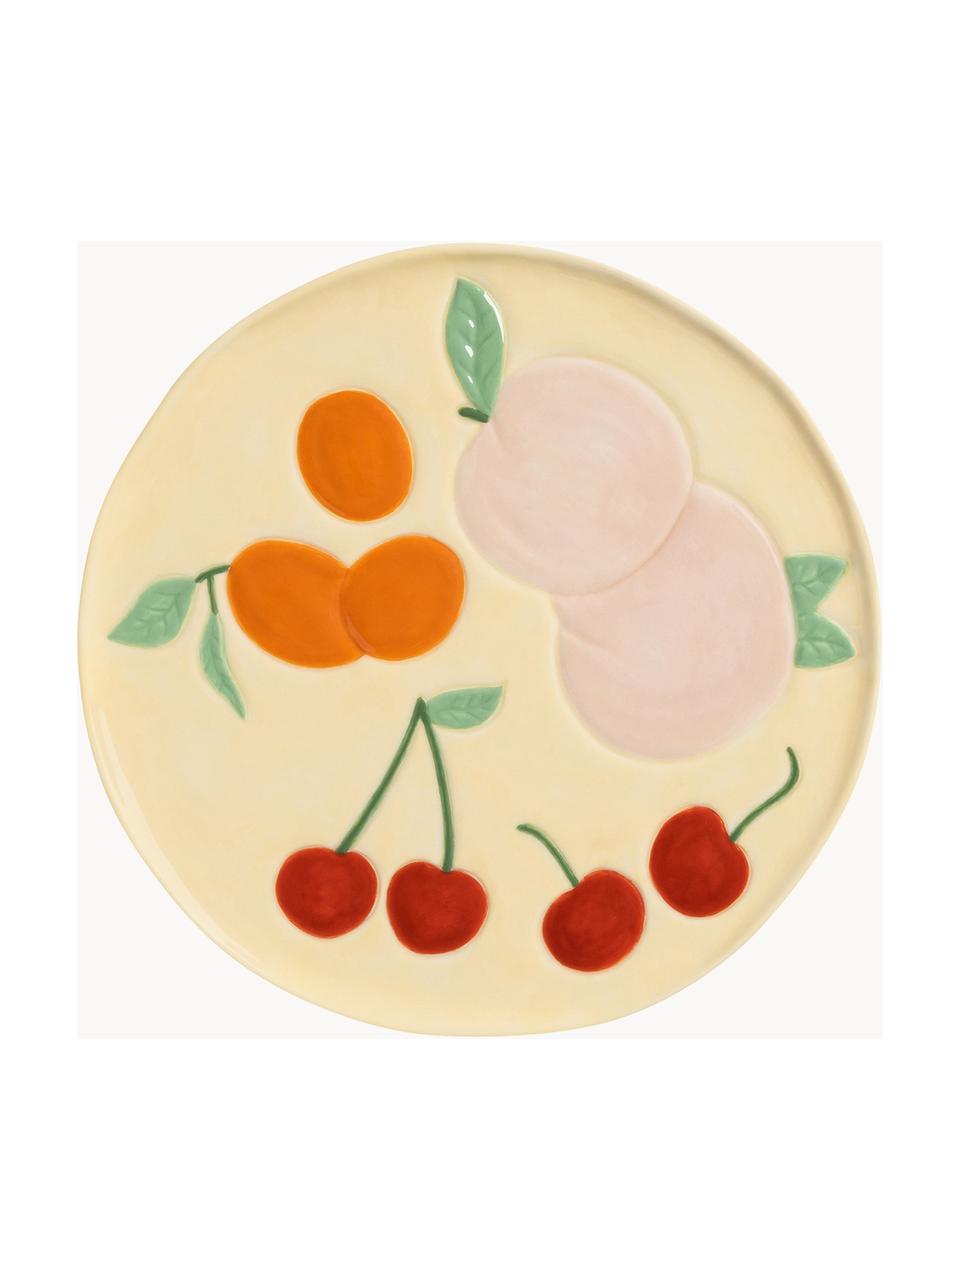 Frühstücksteller Fruitful aus Dolomit, 4er-Set, Dolomit, glasiert, Bunt, Ø 16 cm